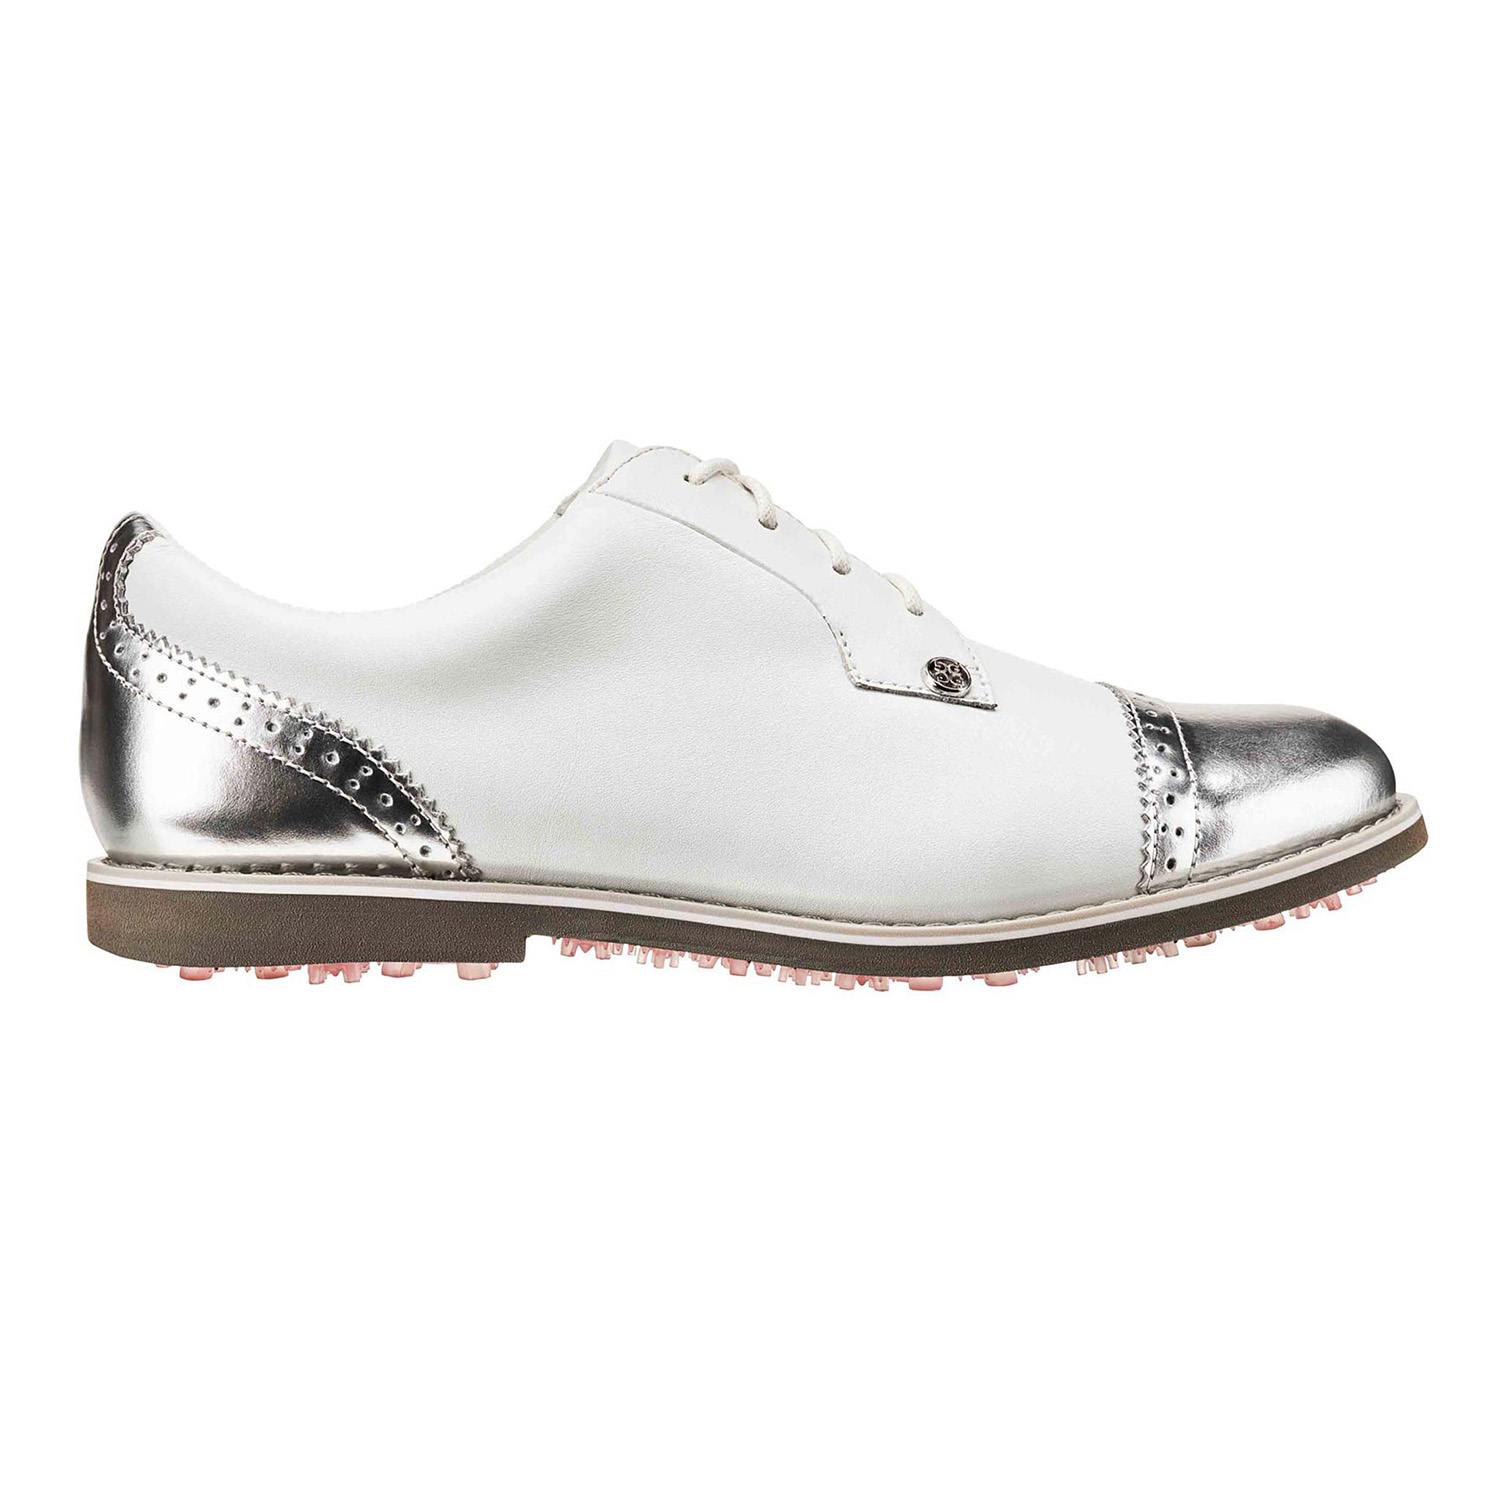 gfore golf shoes women